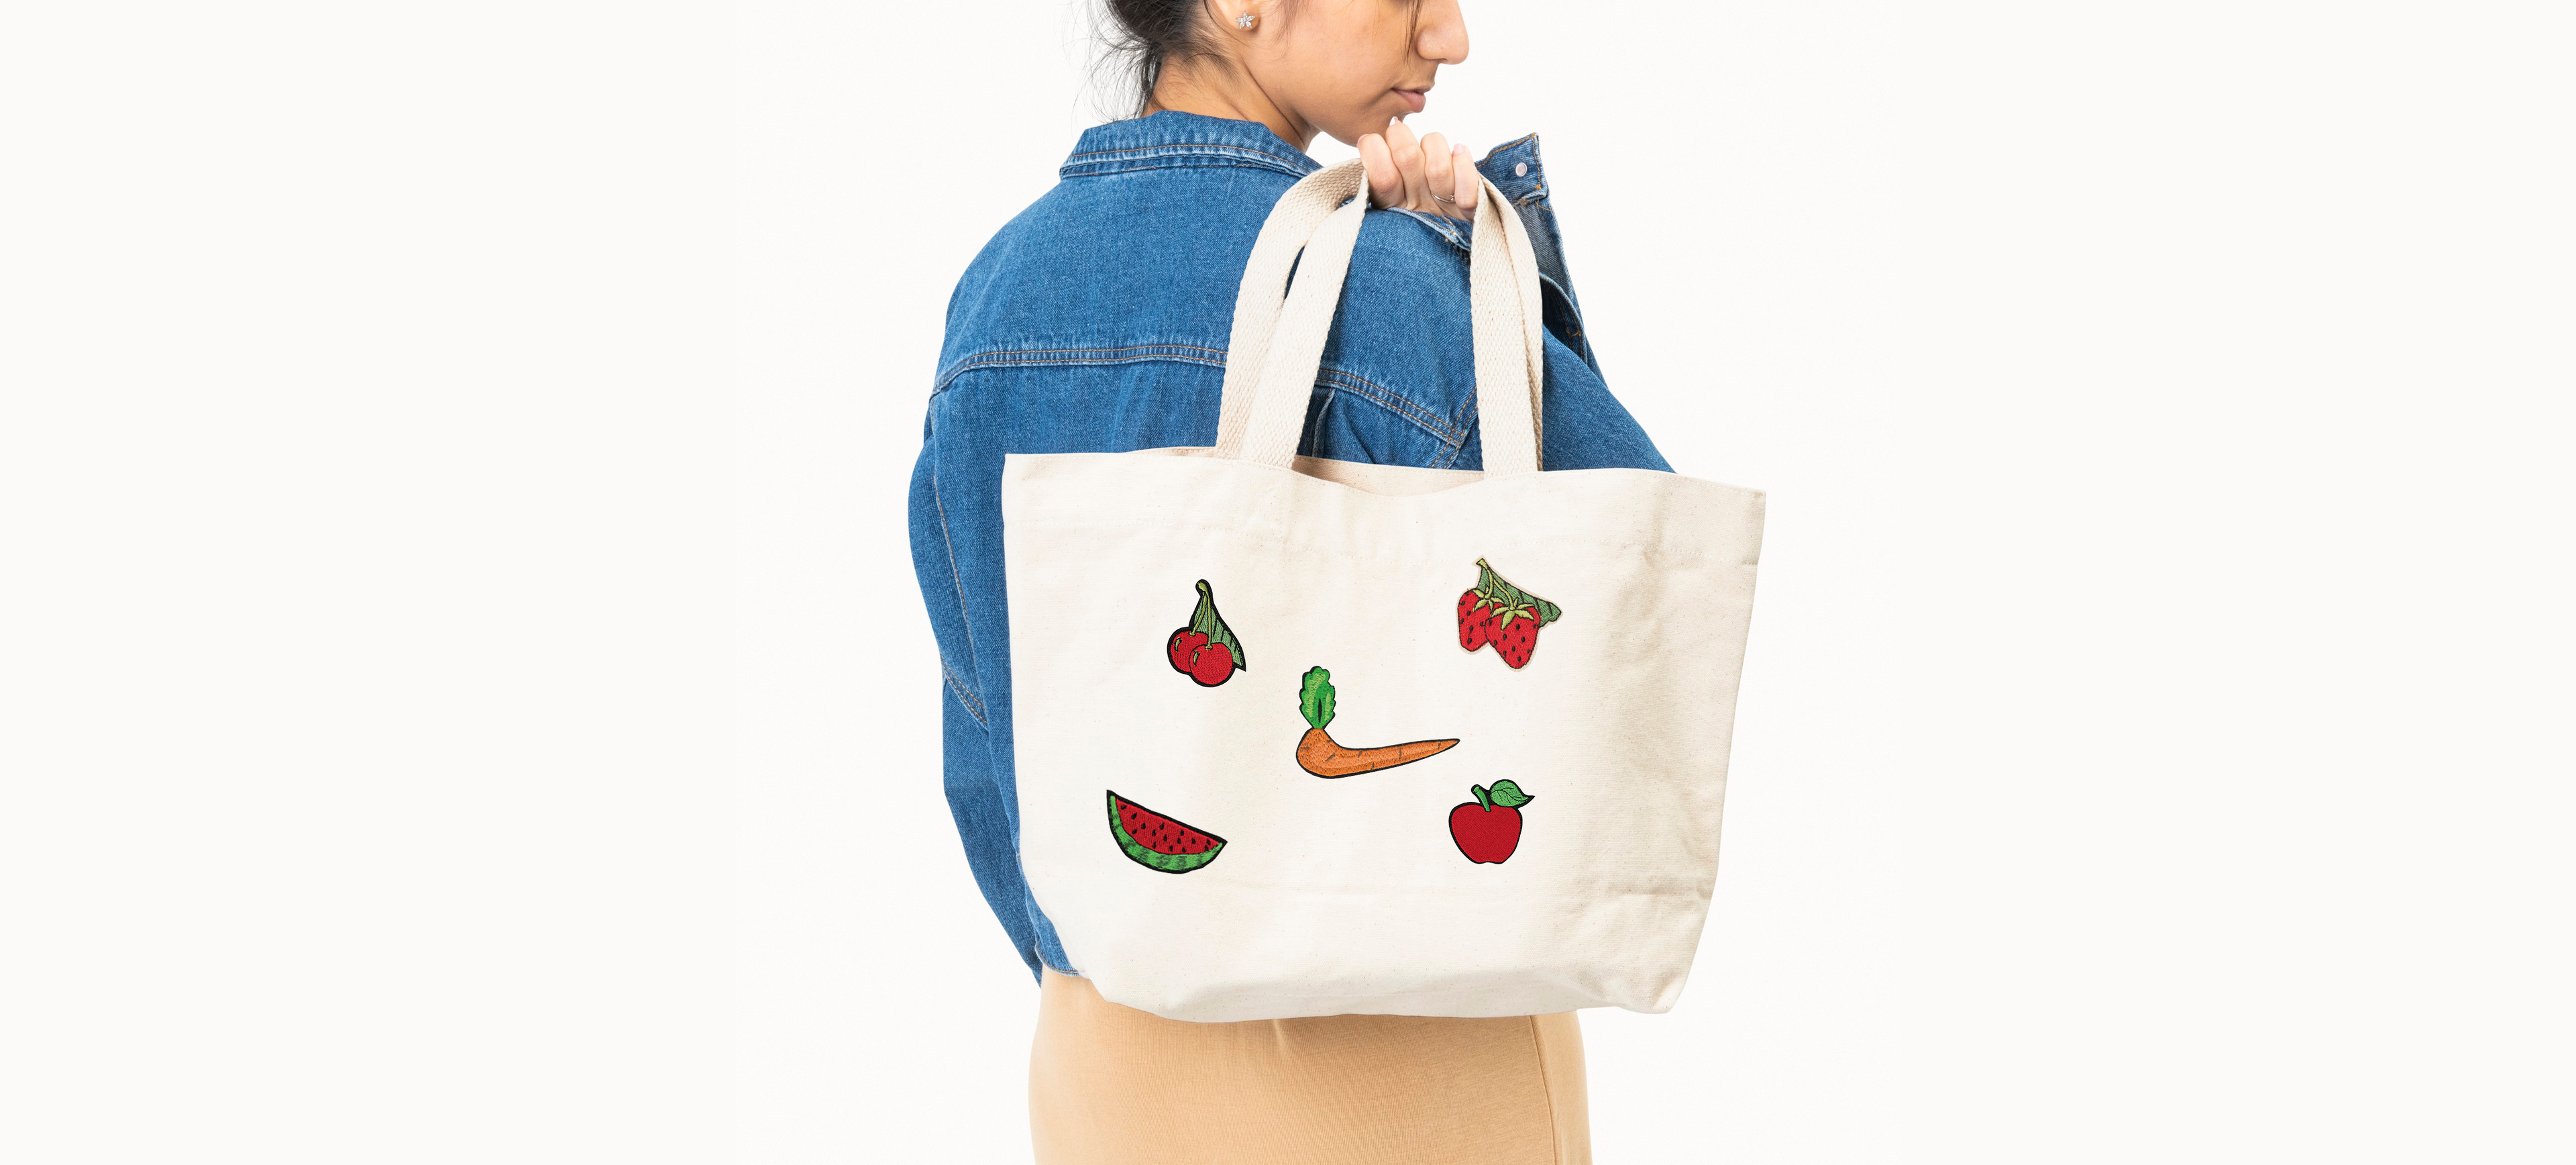 aplikacje naprasowanki owoce na torbie zakupowej marchewka